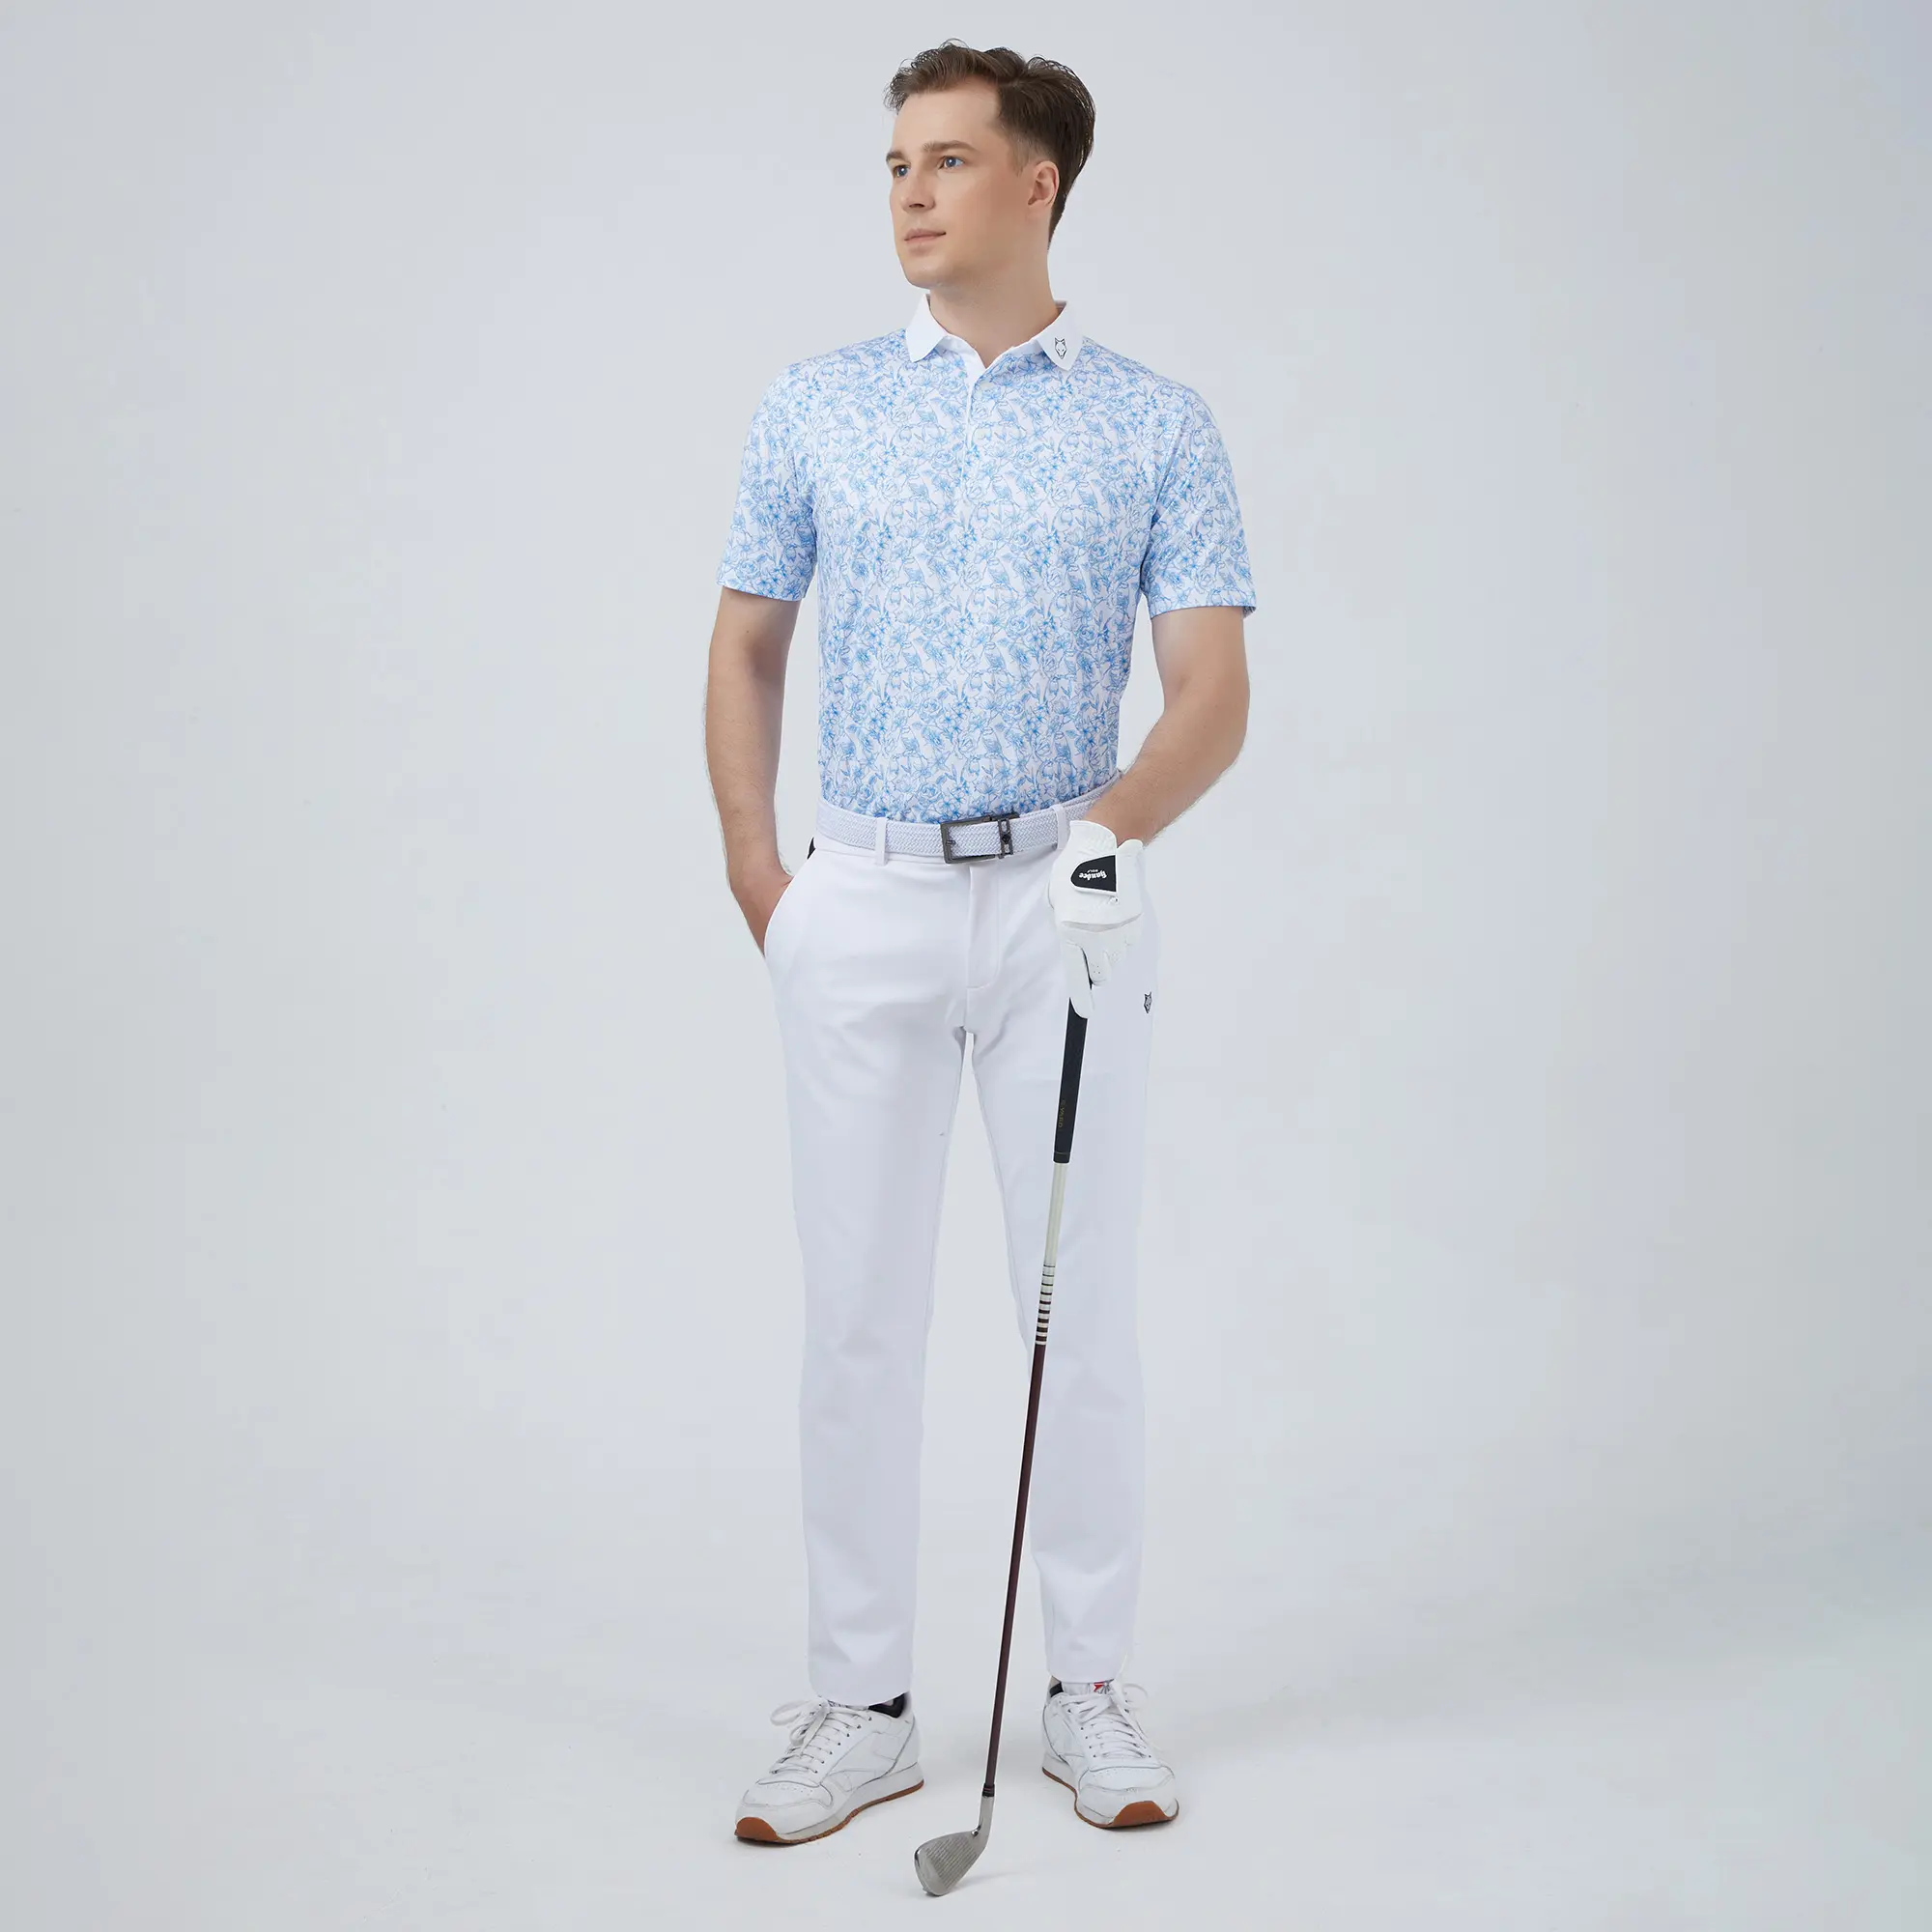 Özel Logo süblimasyon baskı ile Premium Polo Golf tişörtü: High-End kalite Golf forması T-Shirt